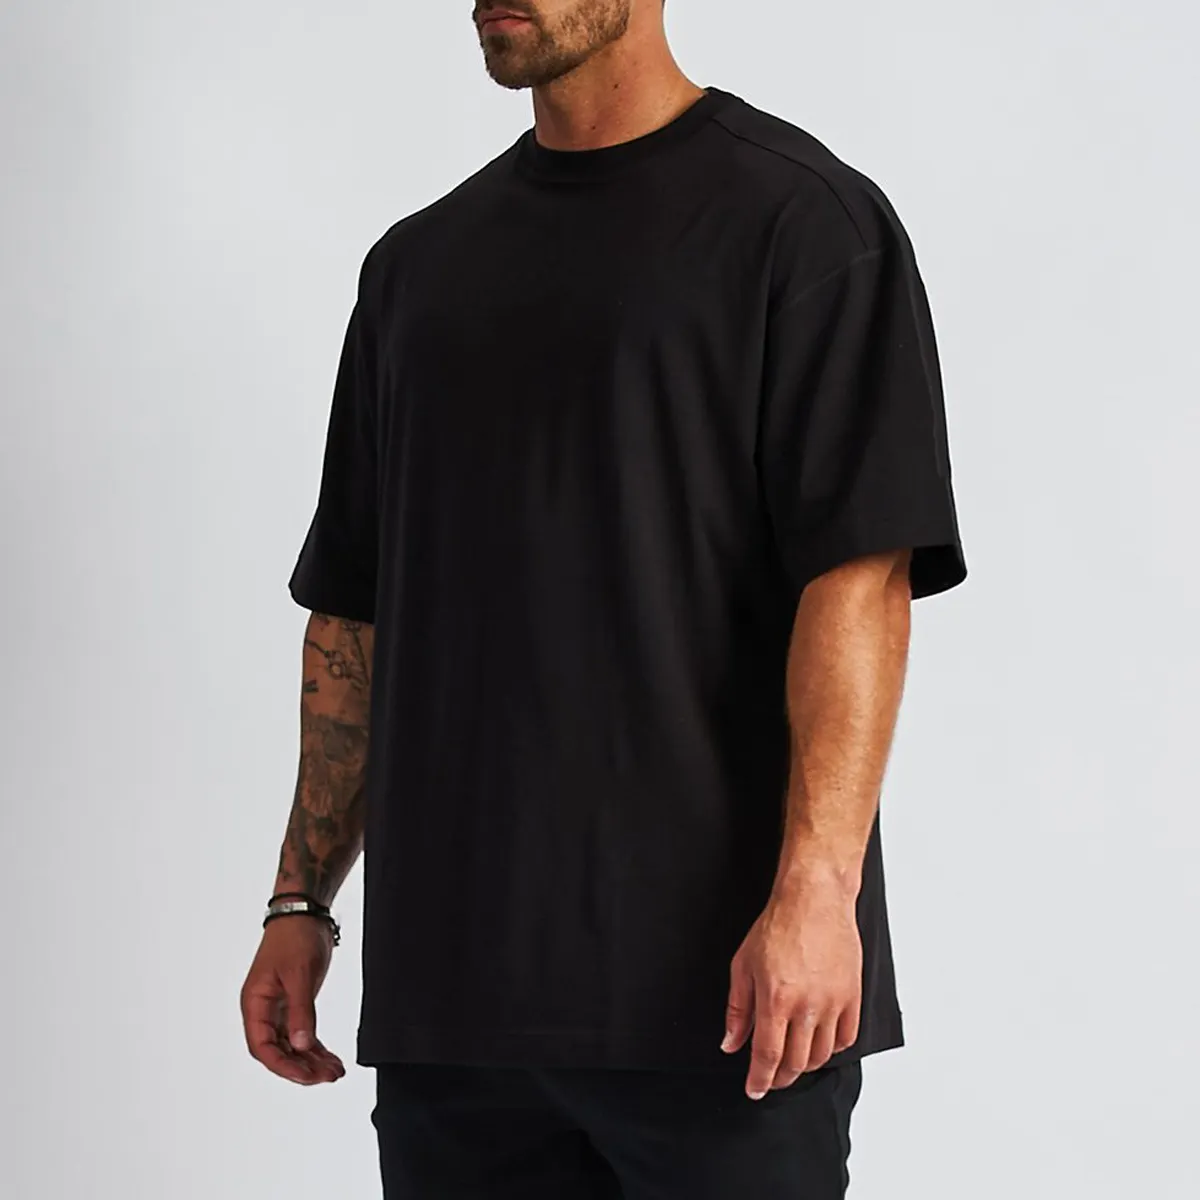 Рубашка с принтом от производителя одежды, мужская одежда от бренда на заказ, футболка оверсайз из 100% хлопка, рекламная рубашка с логотипом на заказ